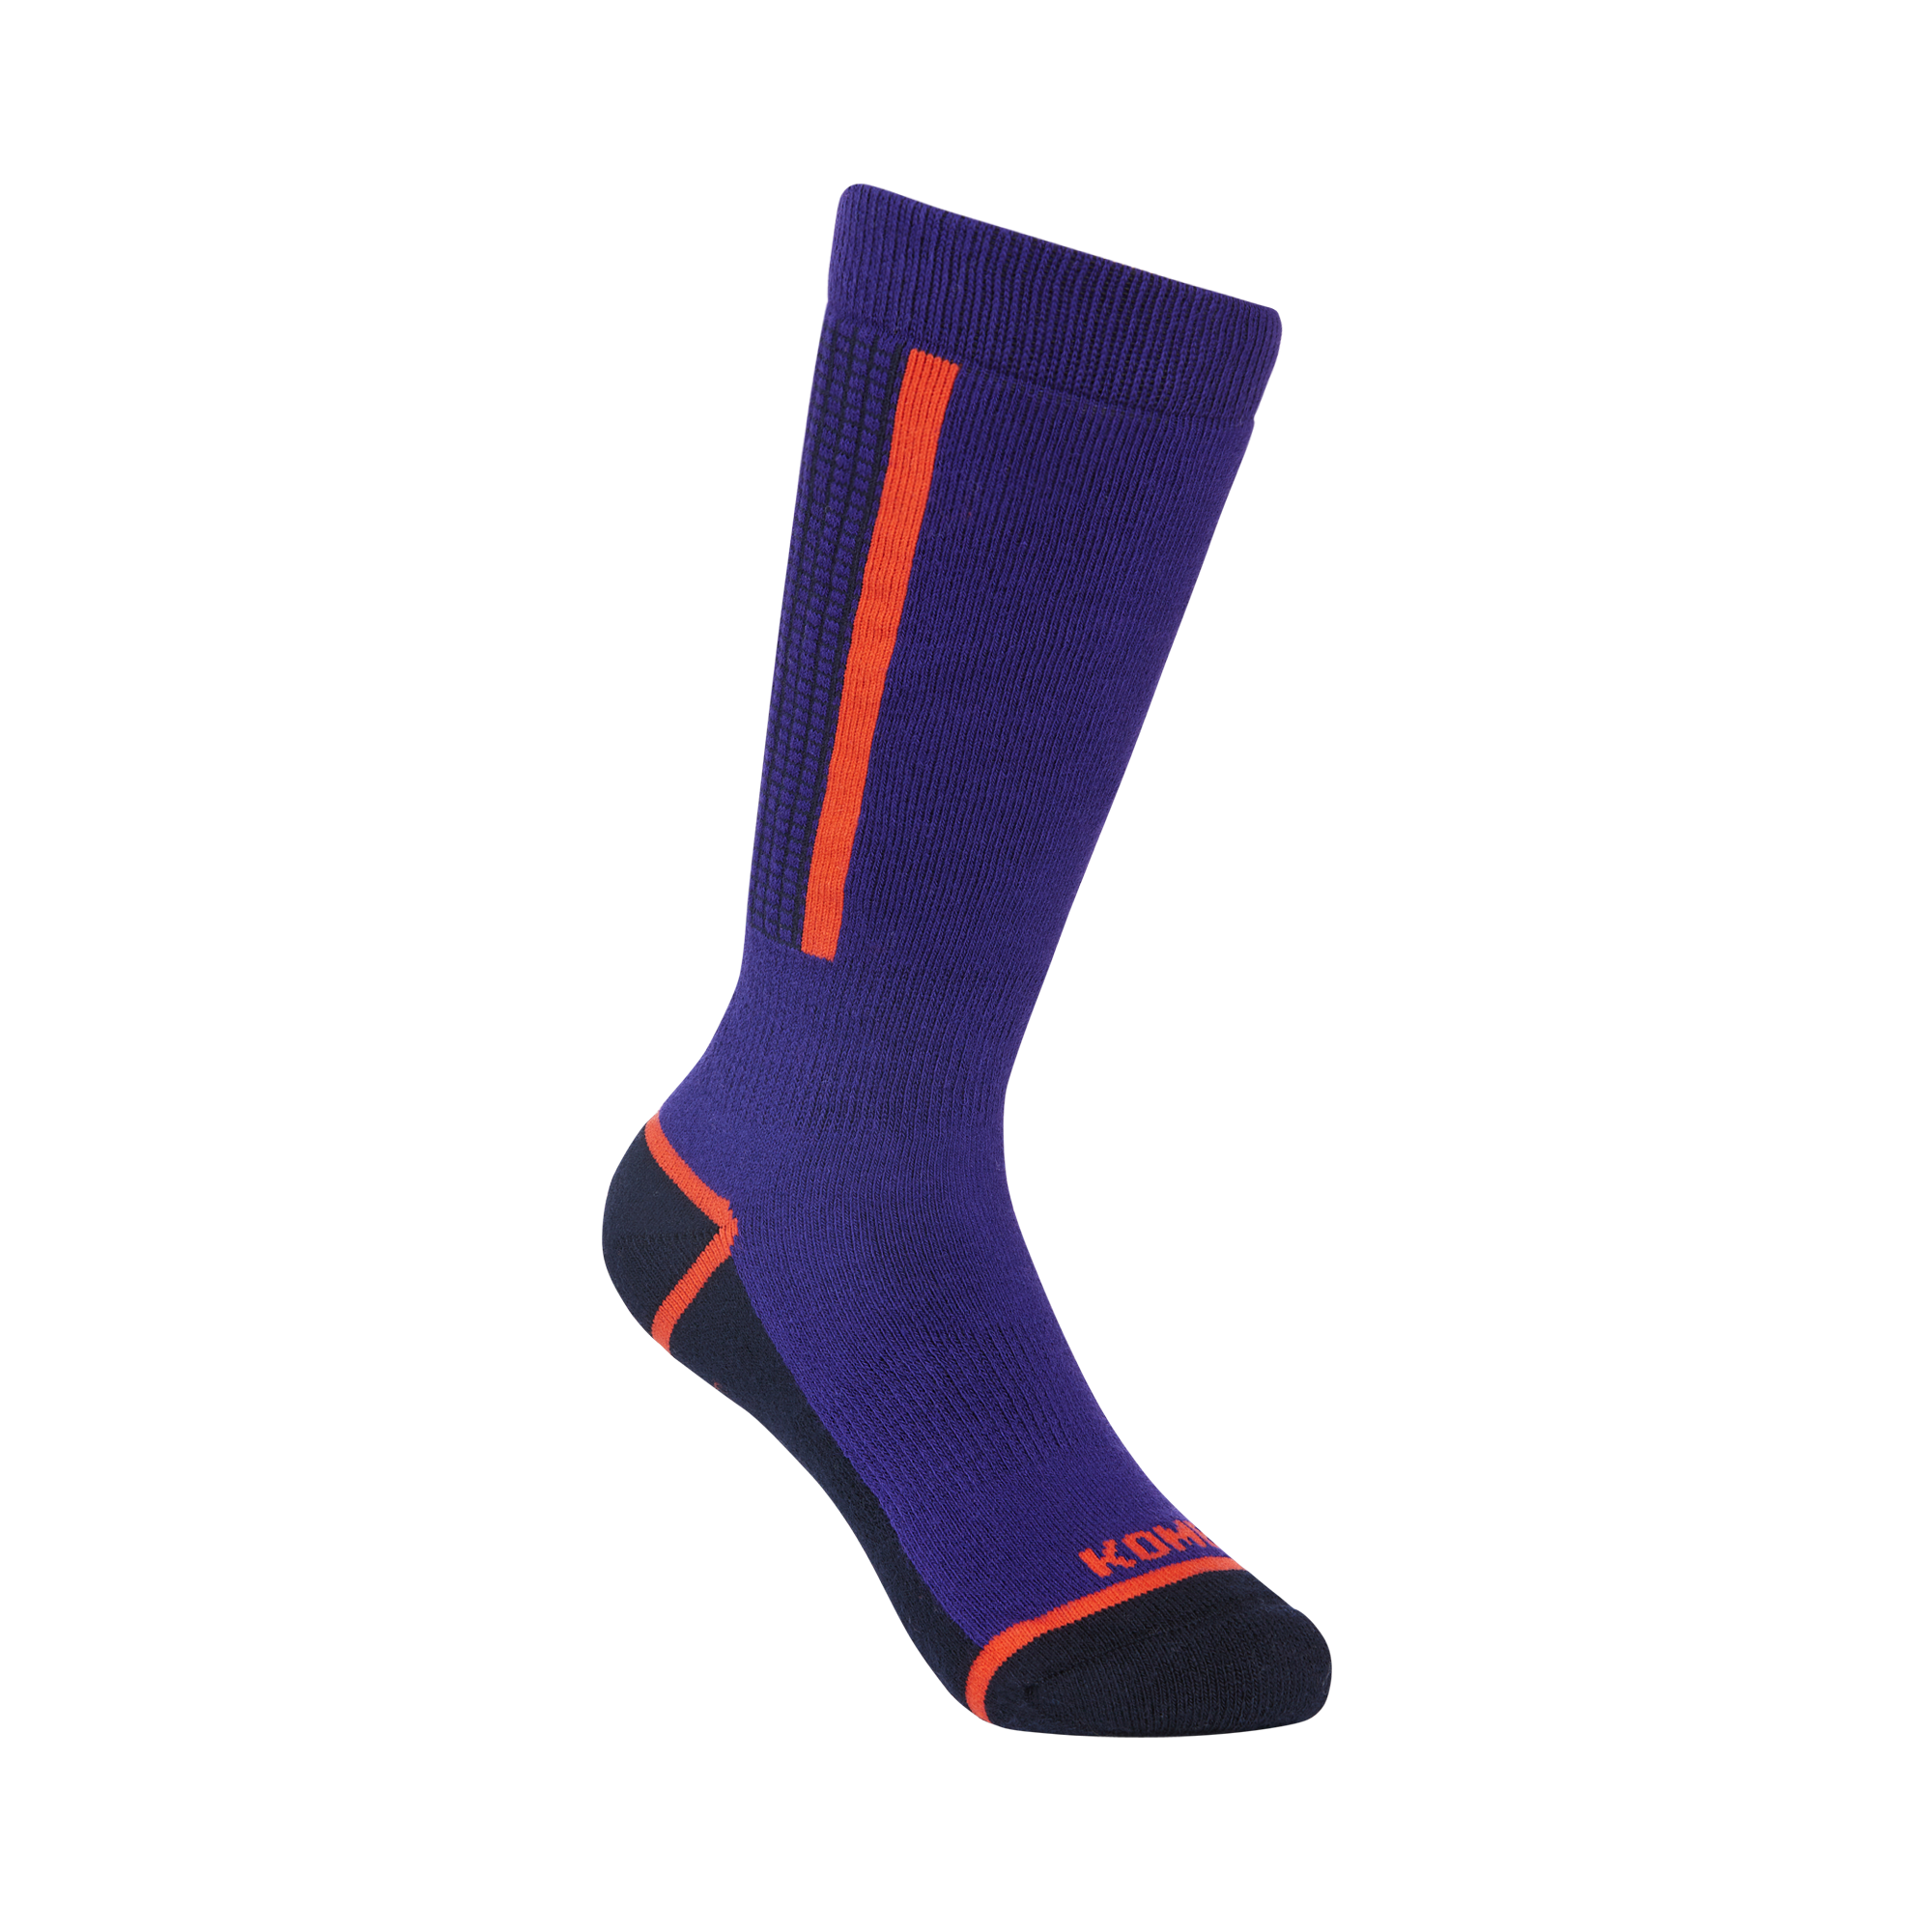 Kombi - Paragon Children's Thick Ski Socks